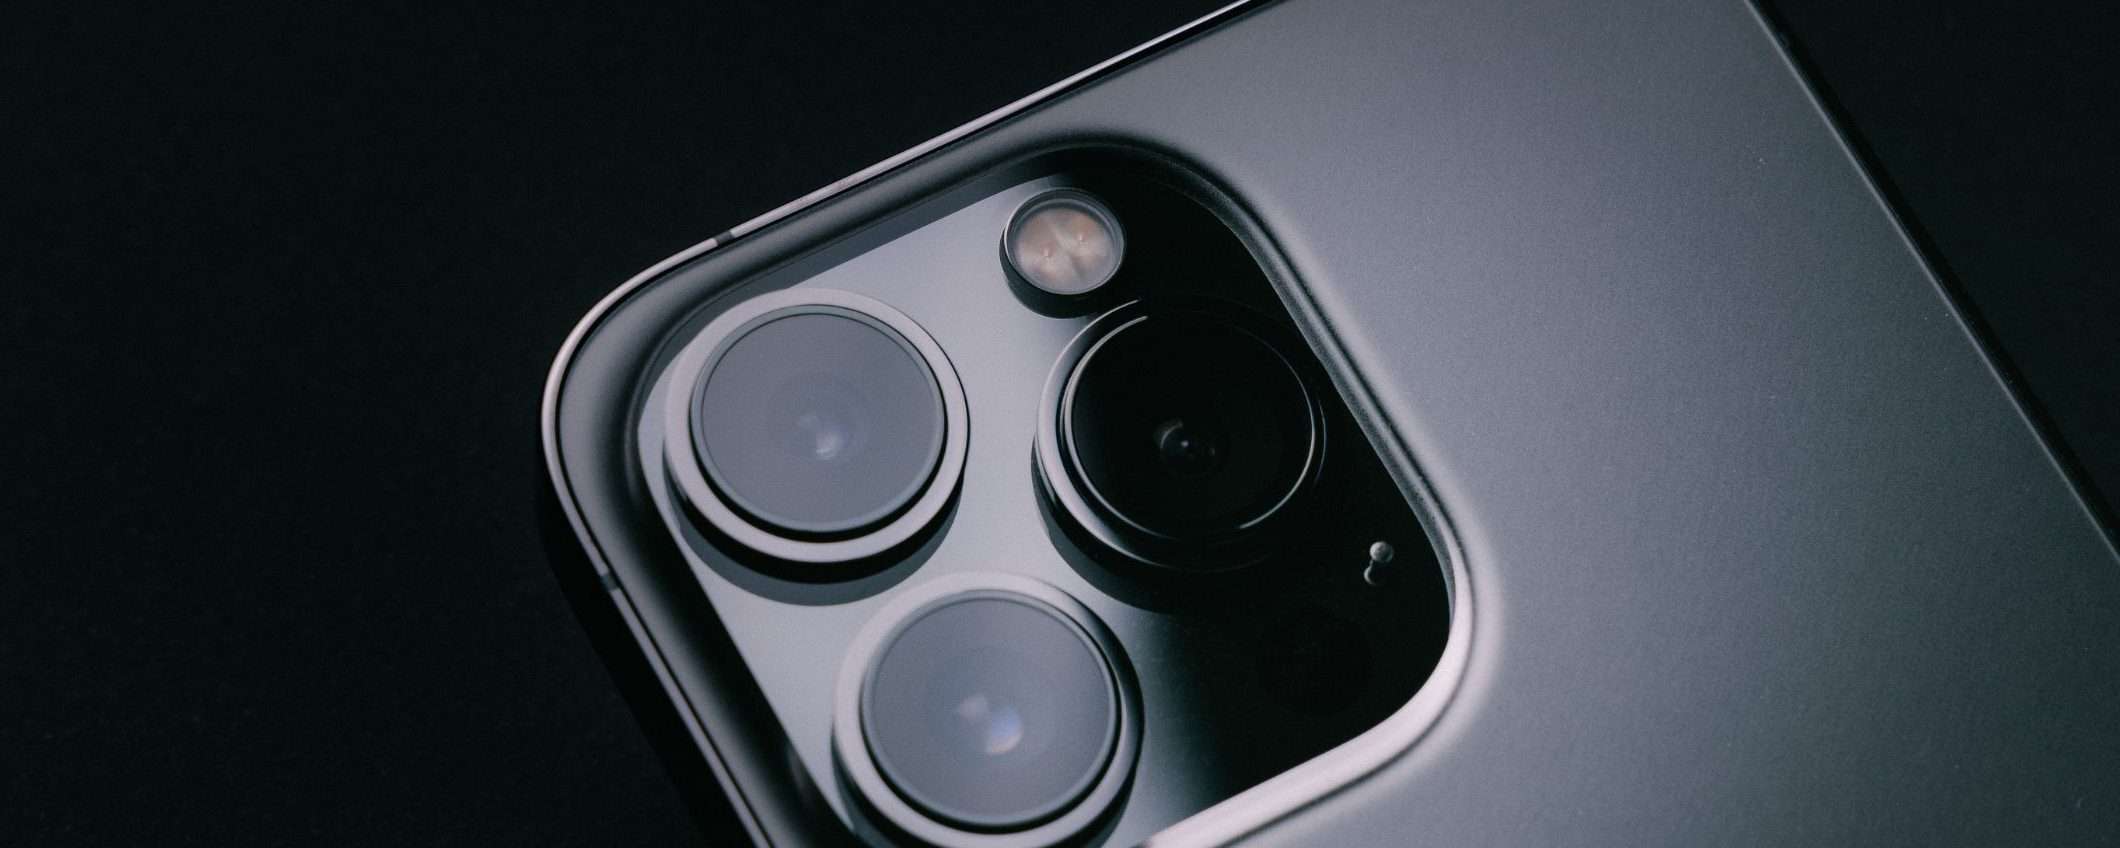 iPhone 14 Pro: nuovo sensore ultrawide con pixel più grandi